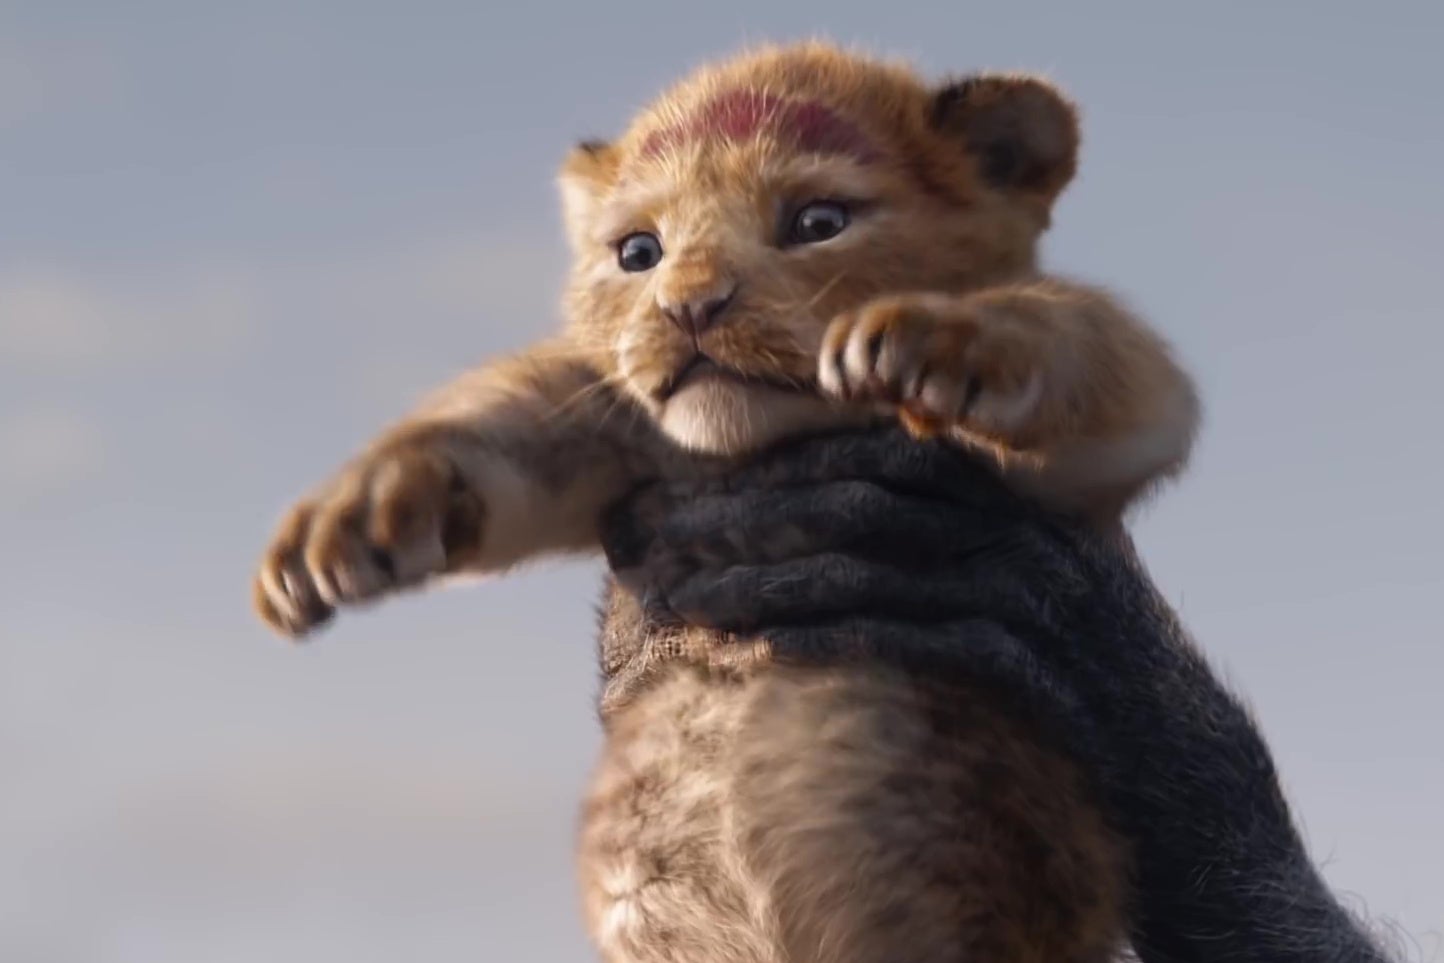 A photorealistic animated lion cub.